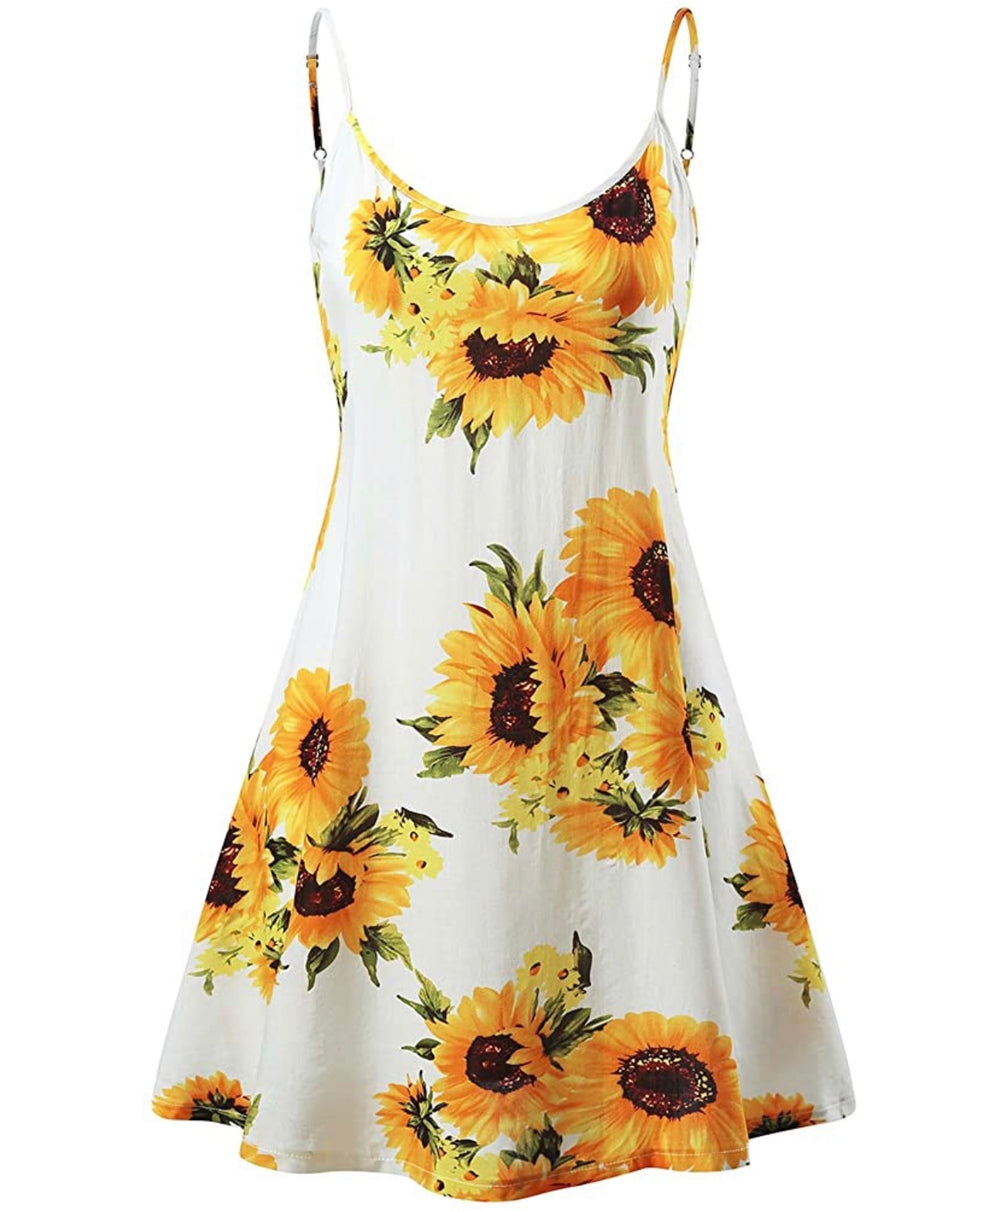 Brandelyn's Favorite Sunflower Sundress